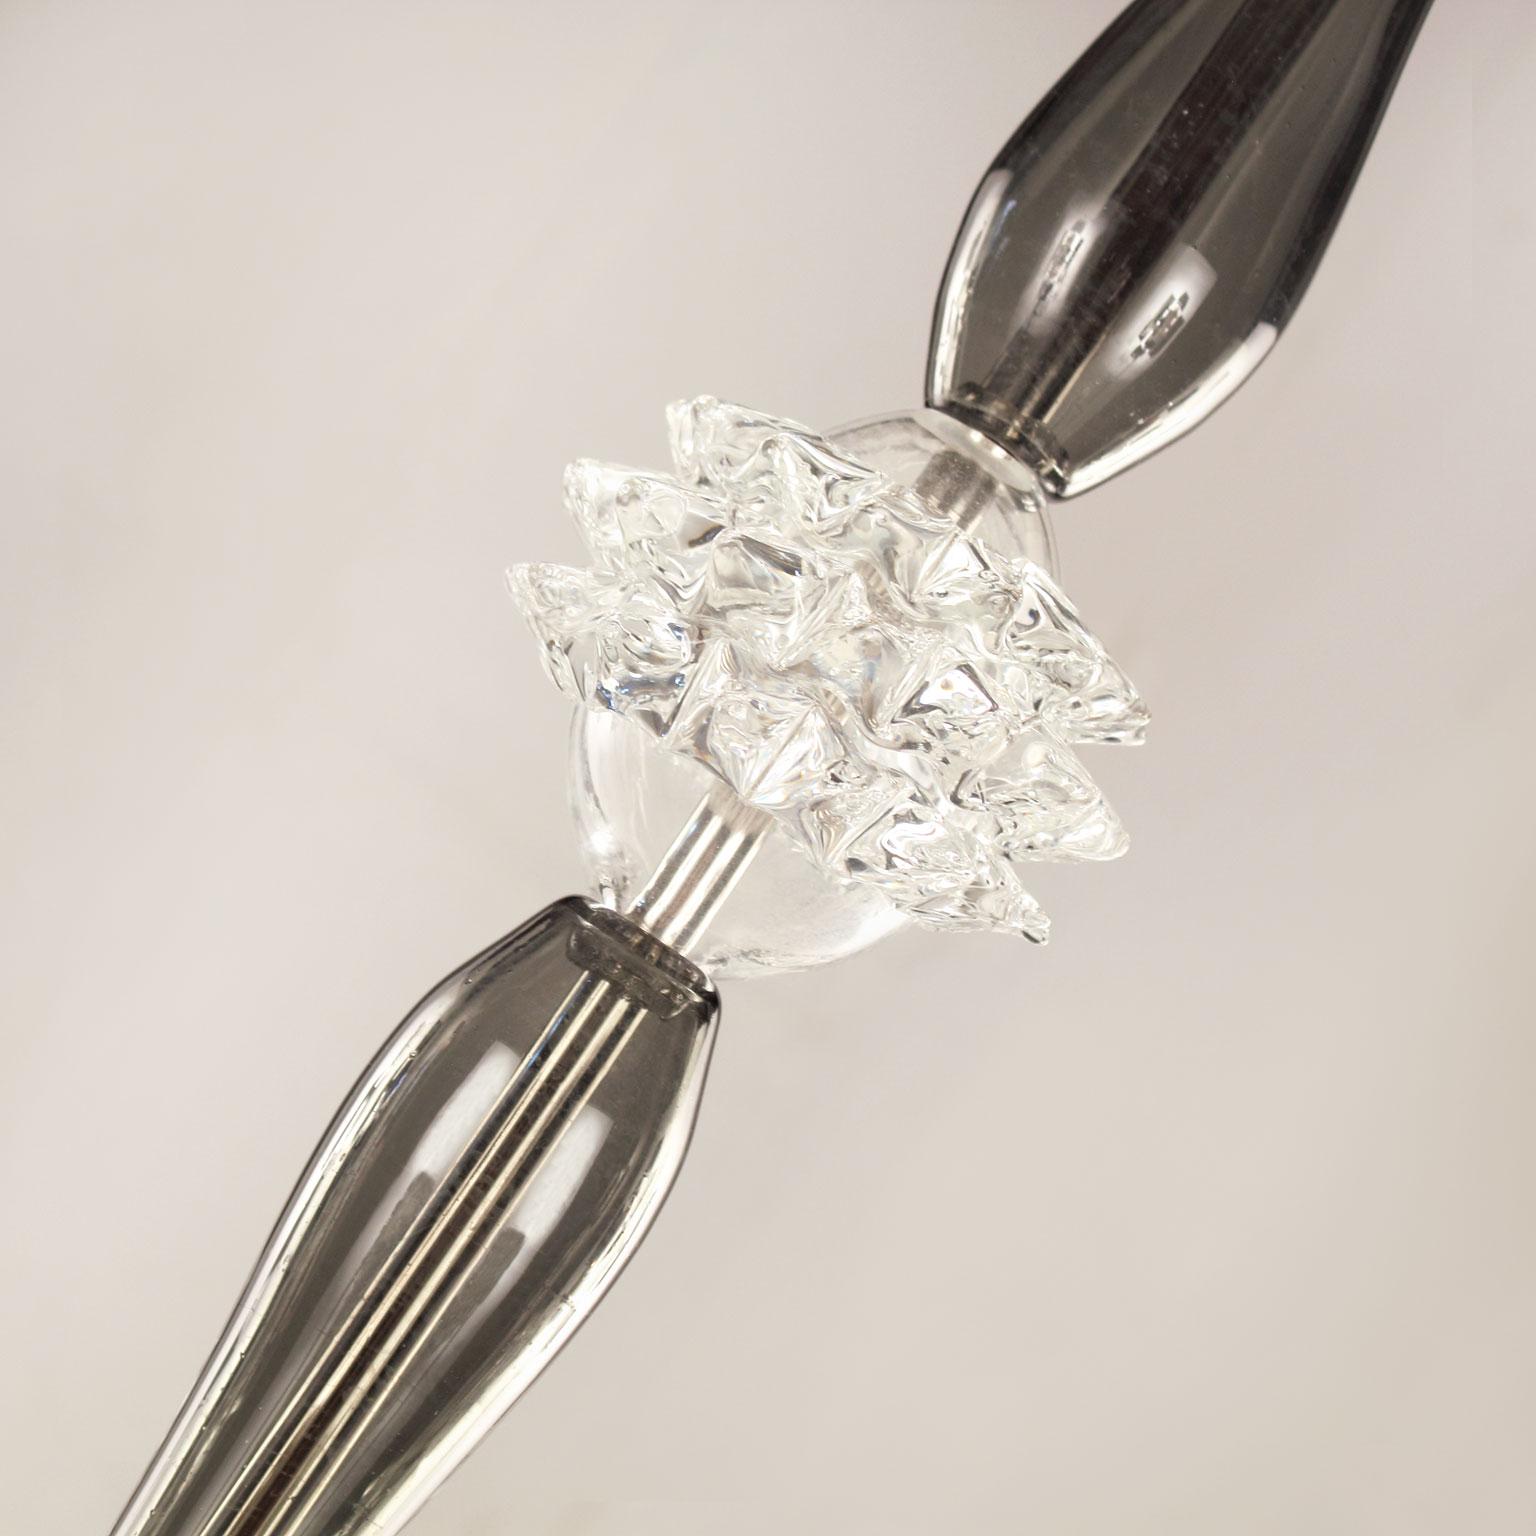 Die mundgeblasenen Glaskronleuchter Diamante von Multiforme zeichnen sich durch ein schlankes zentrales Element aus.
Die Arme, die Mittelsäule und der Abschlussbecher sind aus makellosem, glattem Glas gefertigt. Die herausragenden Elemente dieses